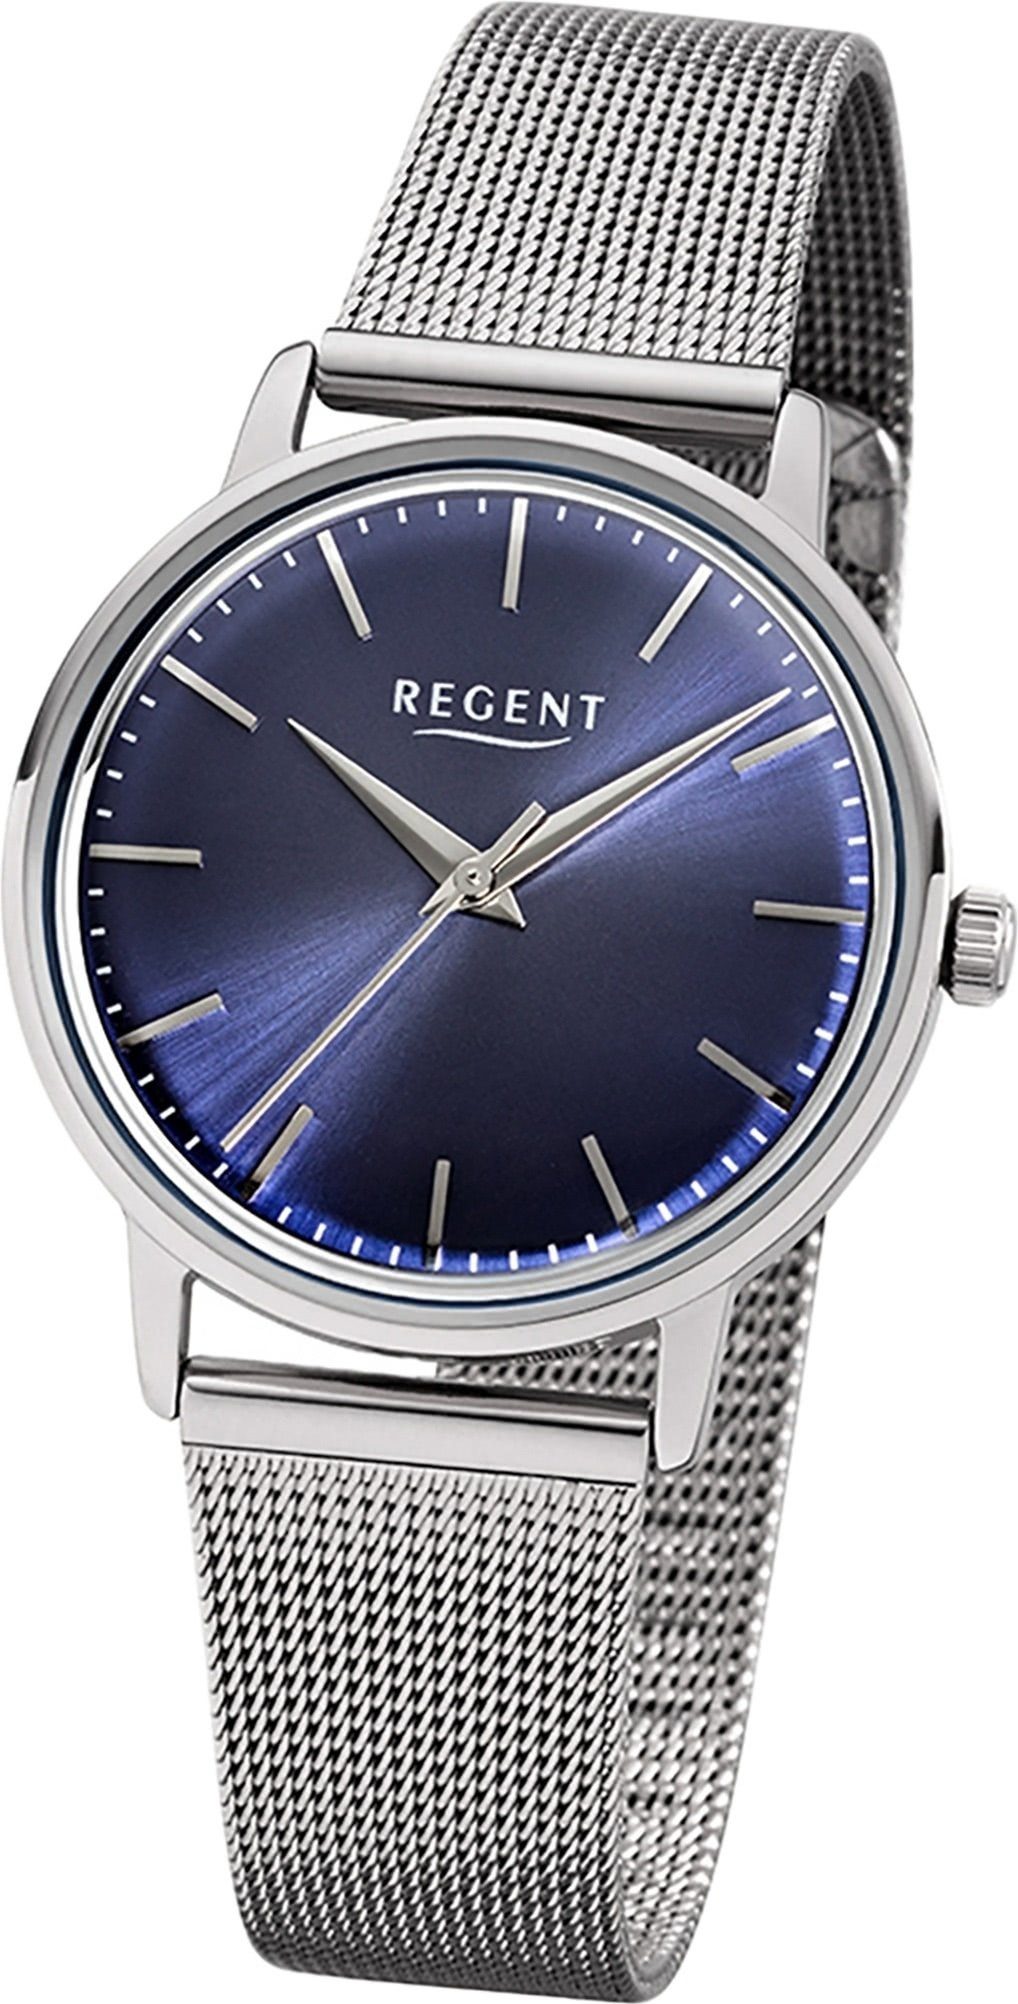 Regent Quarzuhr Regent Edelstahl Damen Uhr 2252485, Damenuhr Edelstahlarmband silber, rundes Gehäuse, mittel (ca. 32mm)